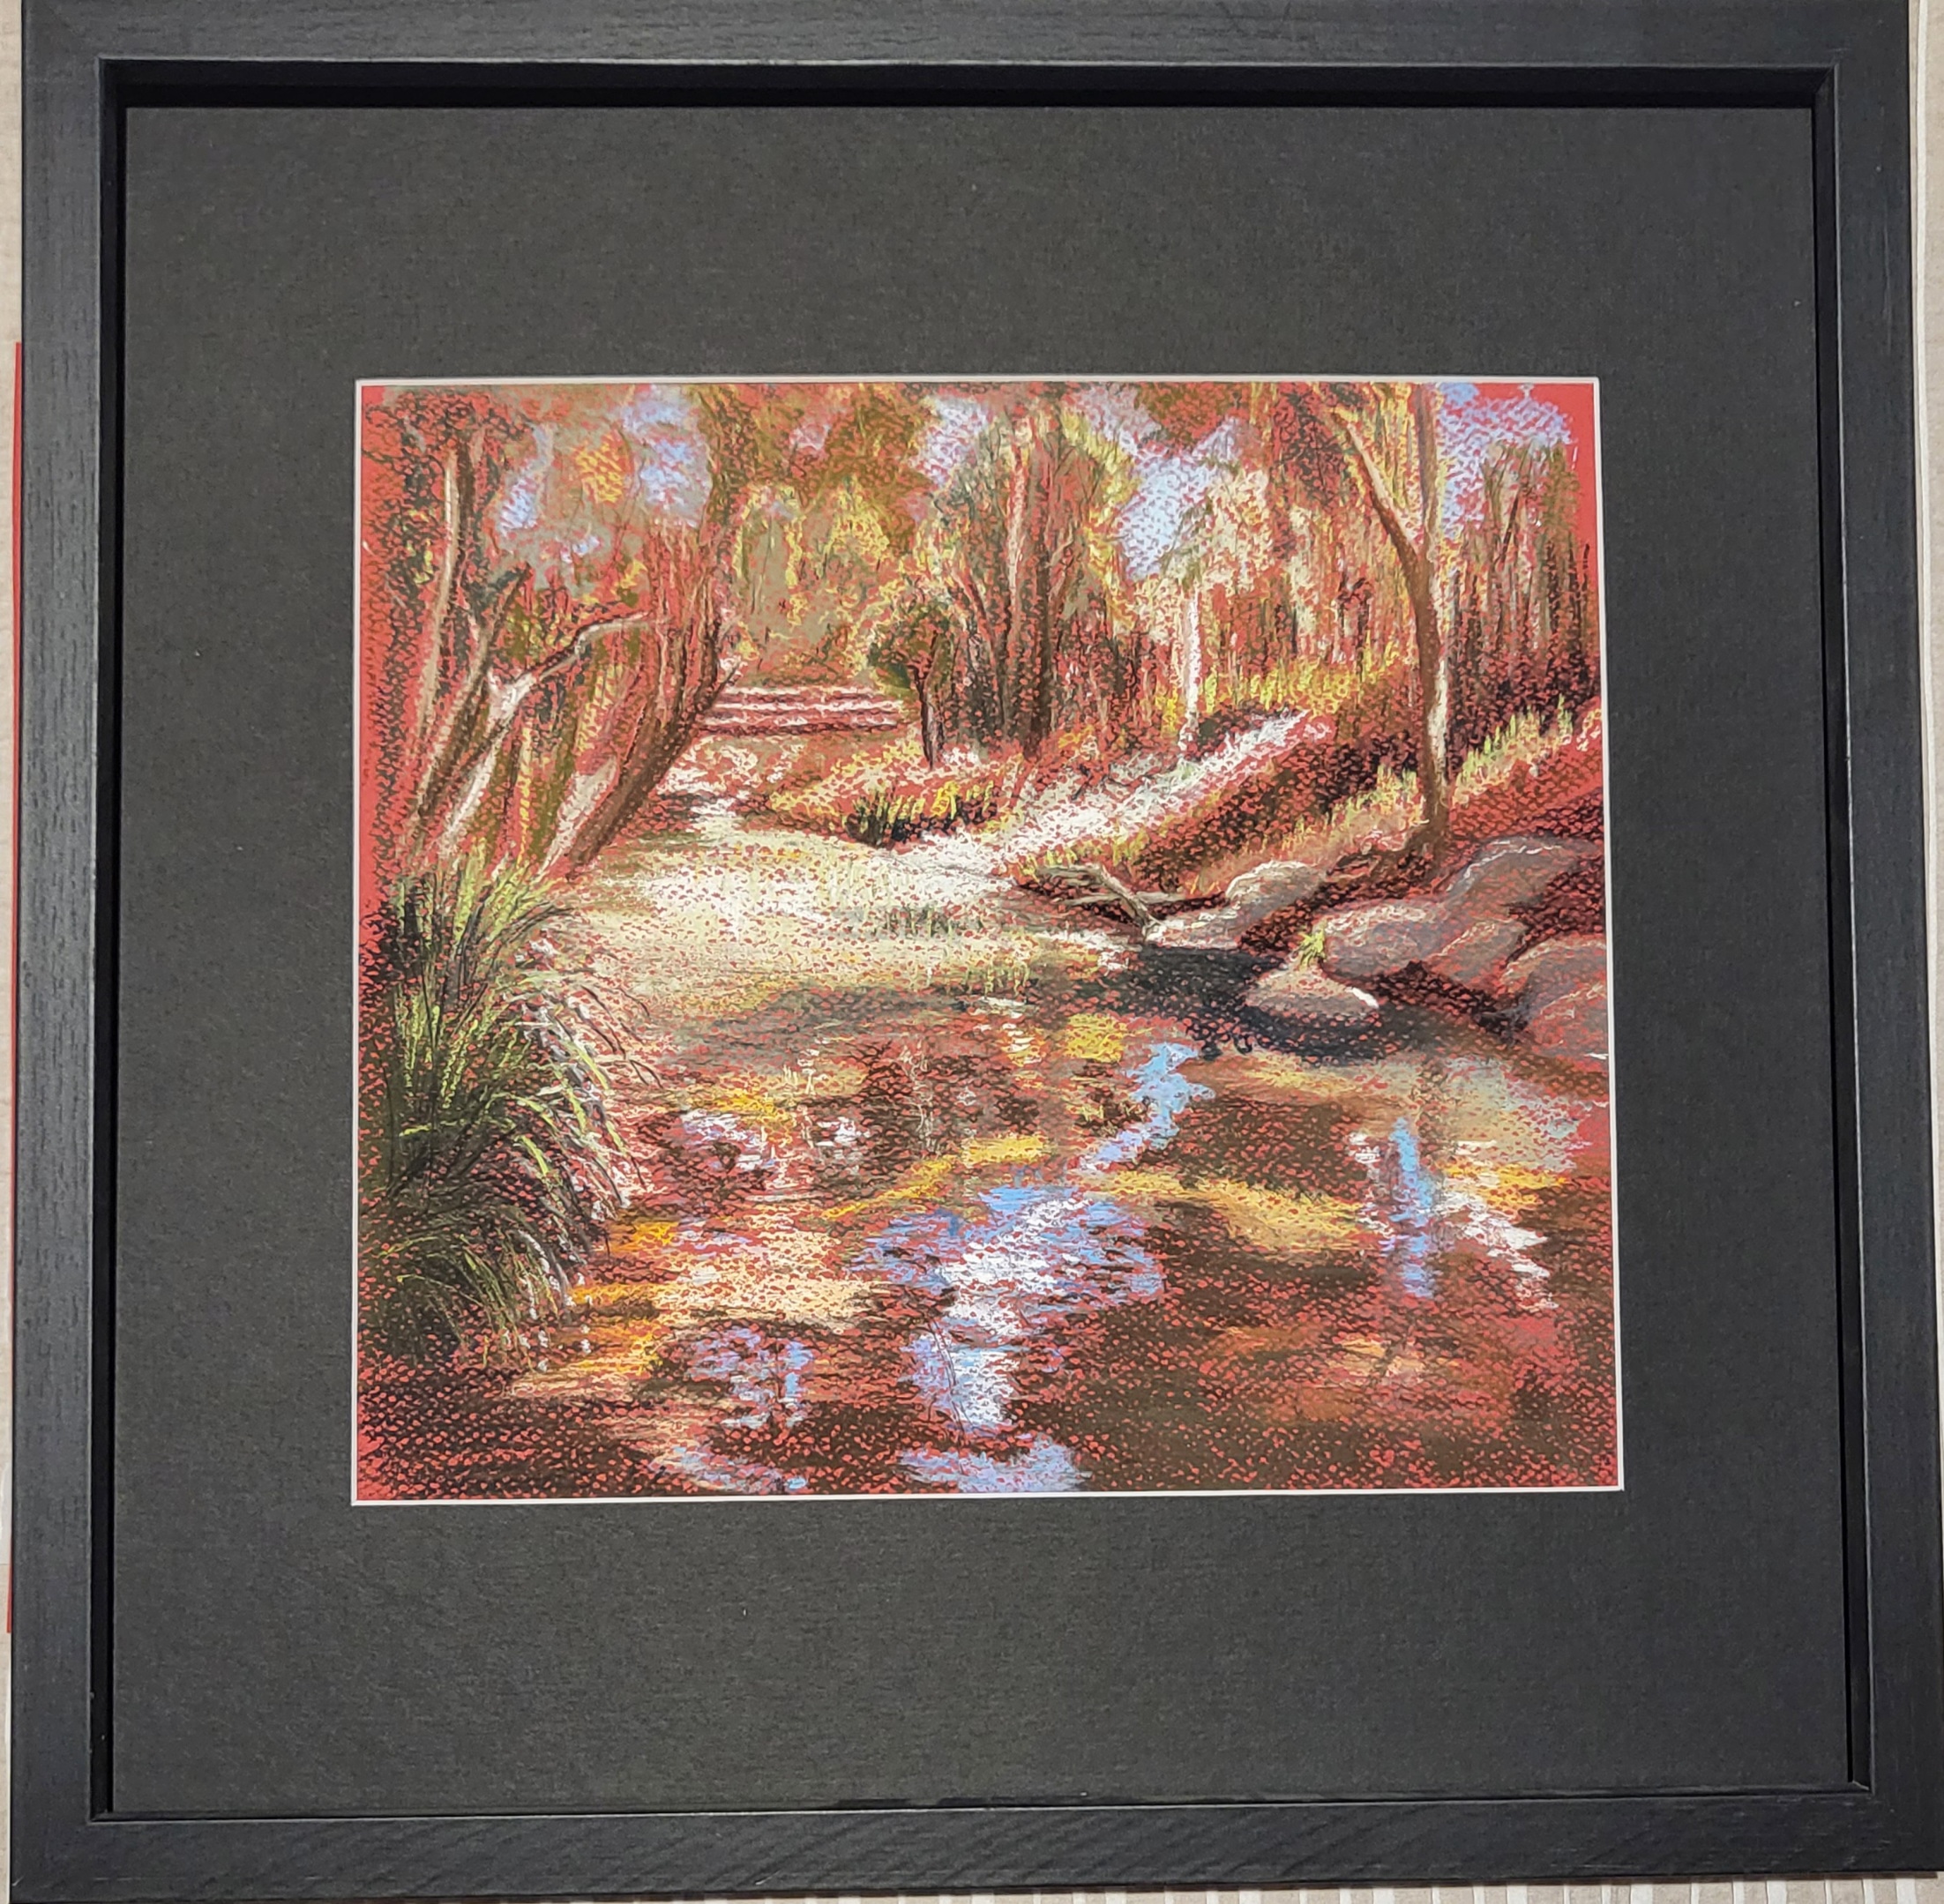 Artwork image titled - River Scene, Red